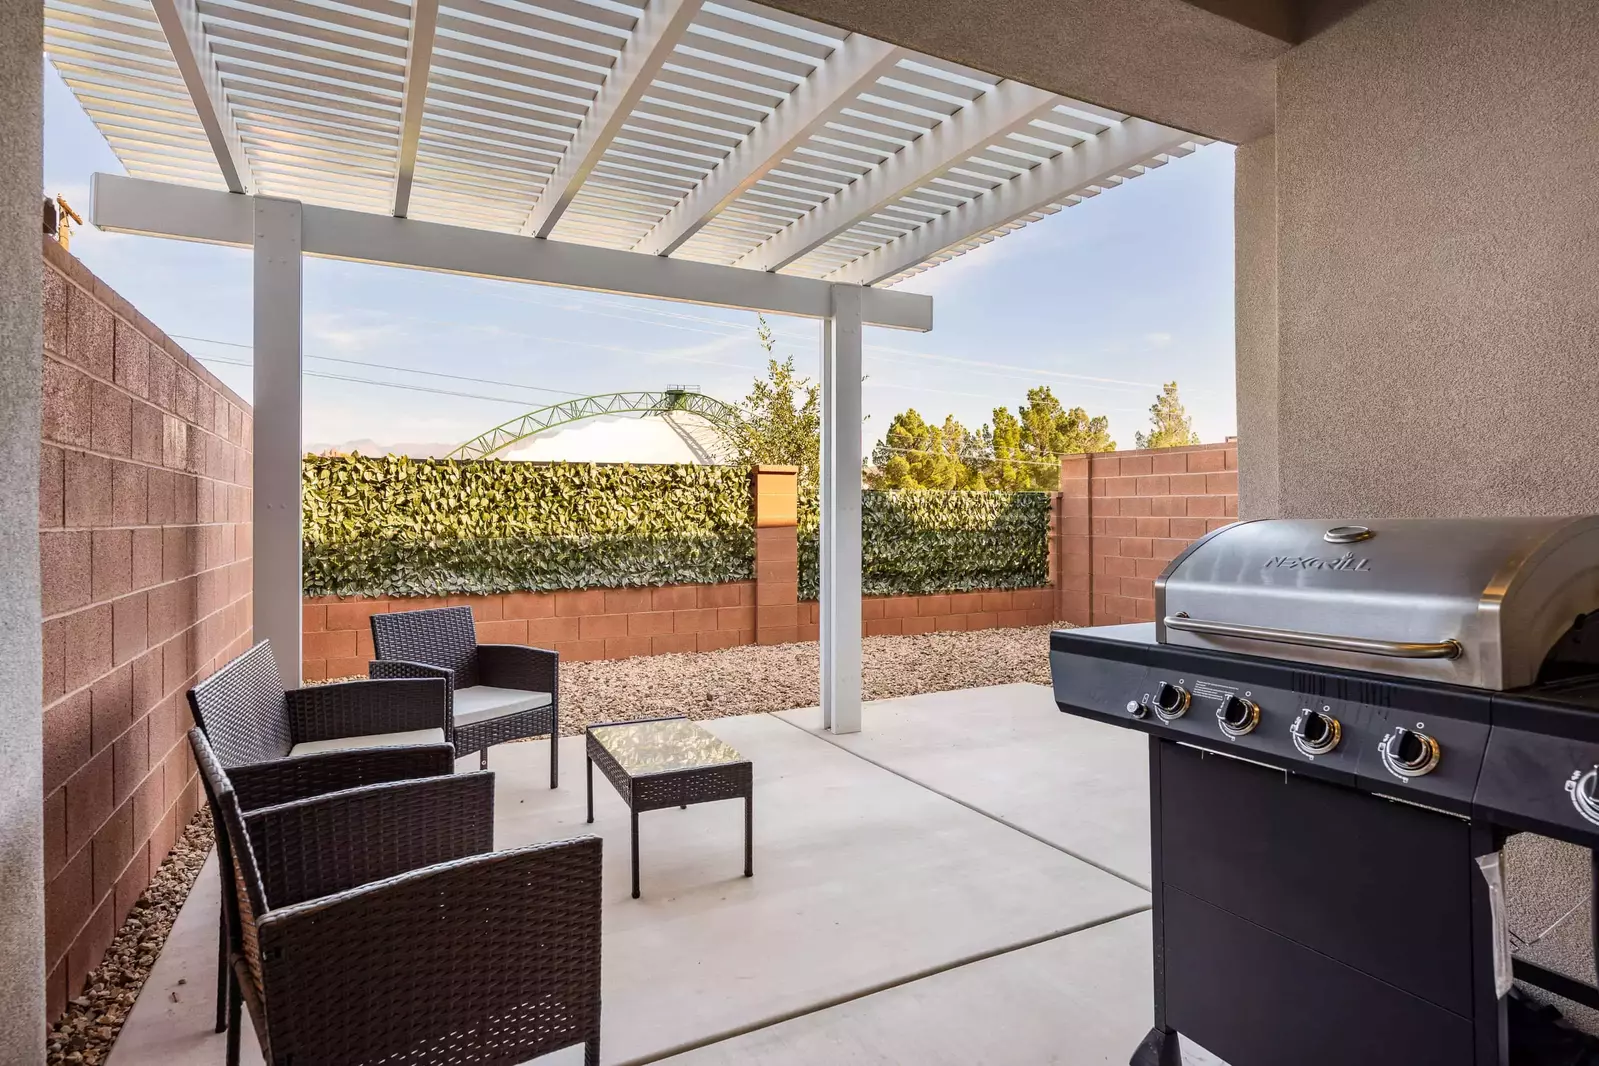 Pergola, patio seating, Grill, private backyard